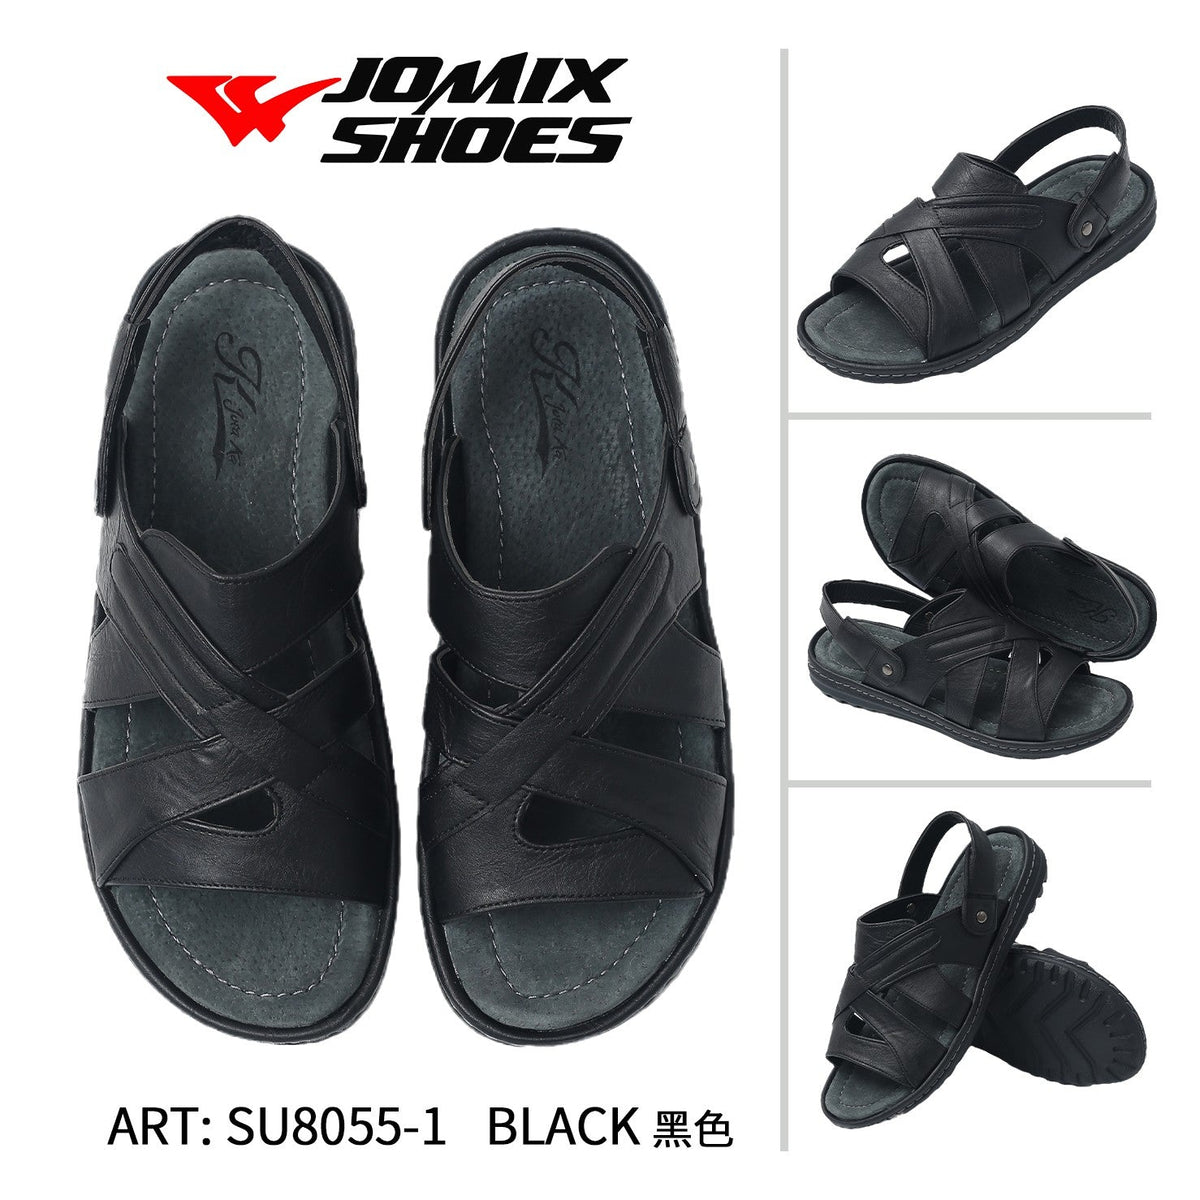 Sandali da uomo Jomix Shoes SU8055-1